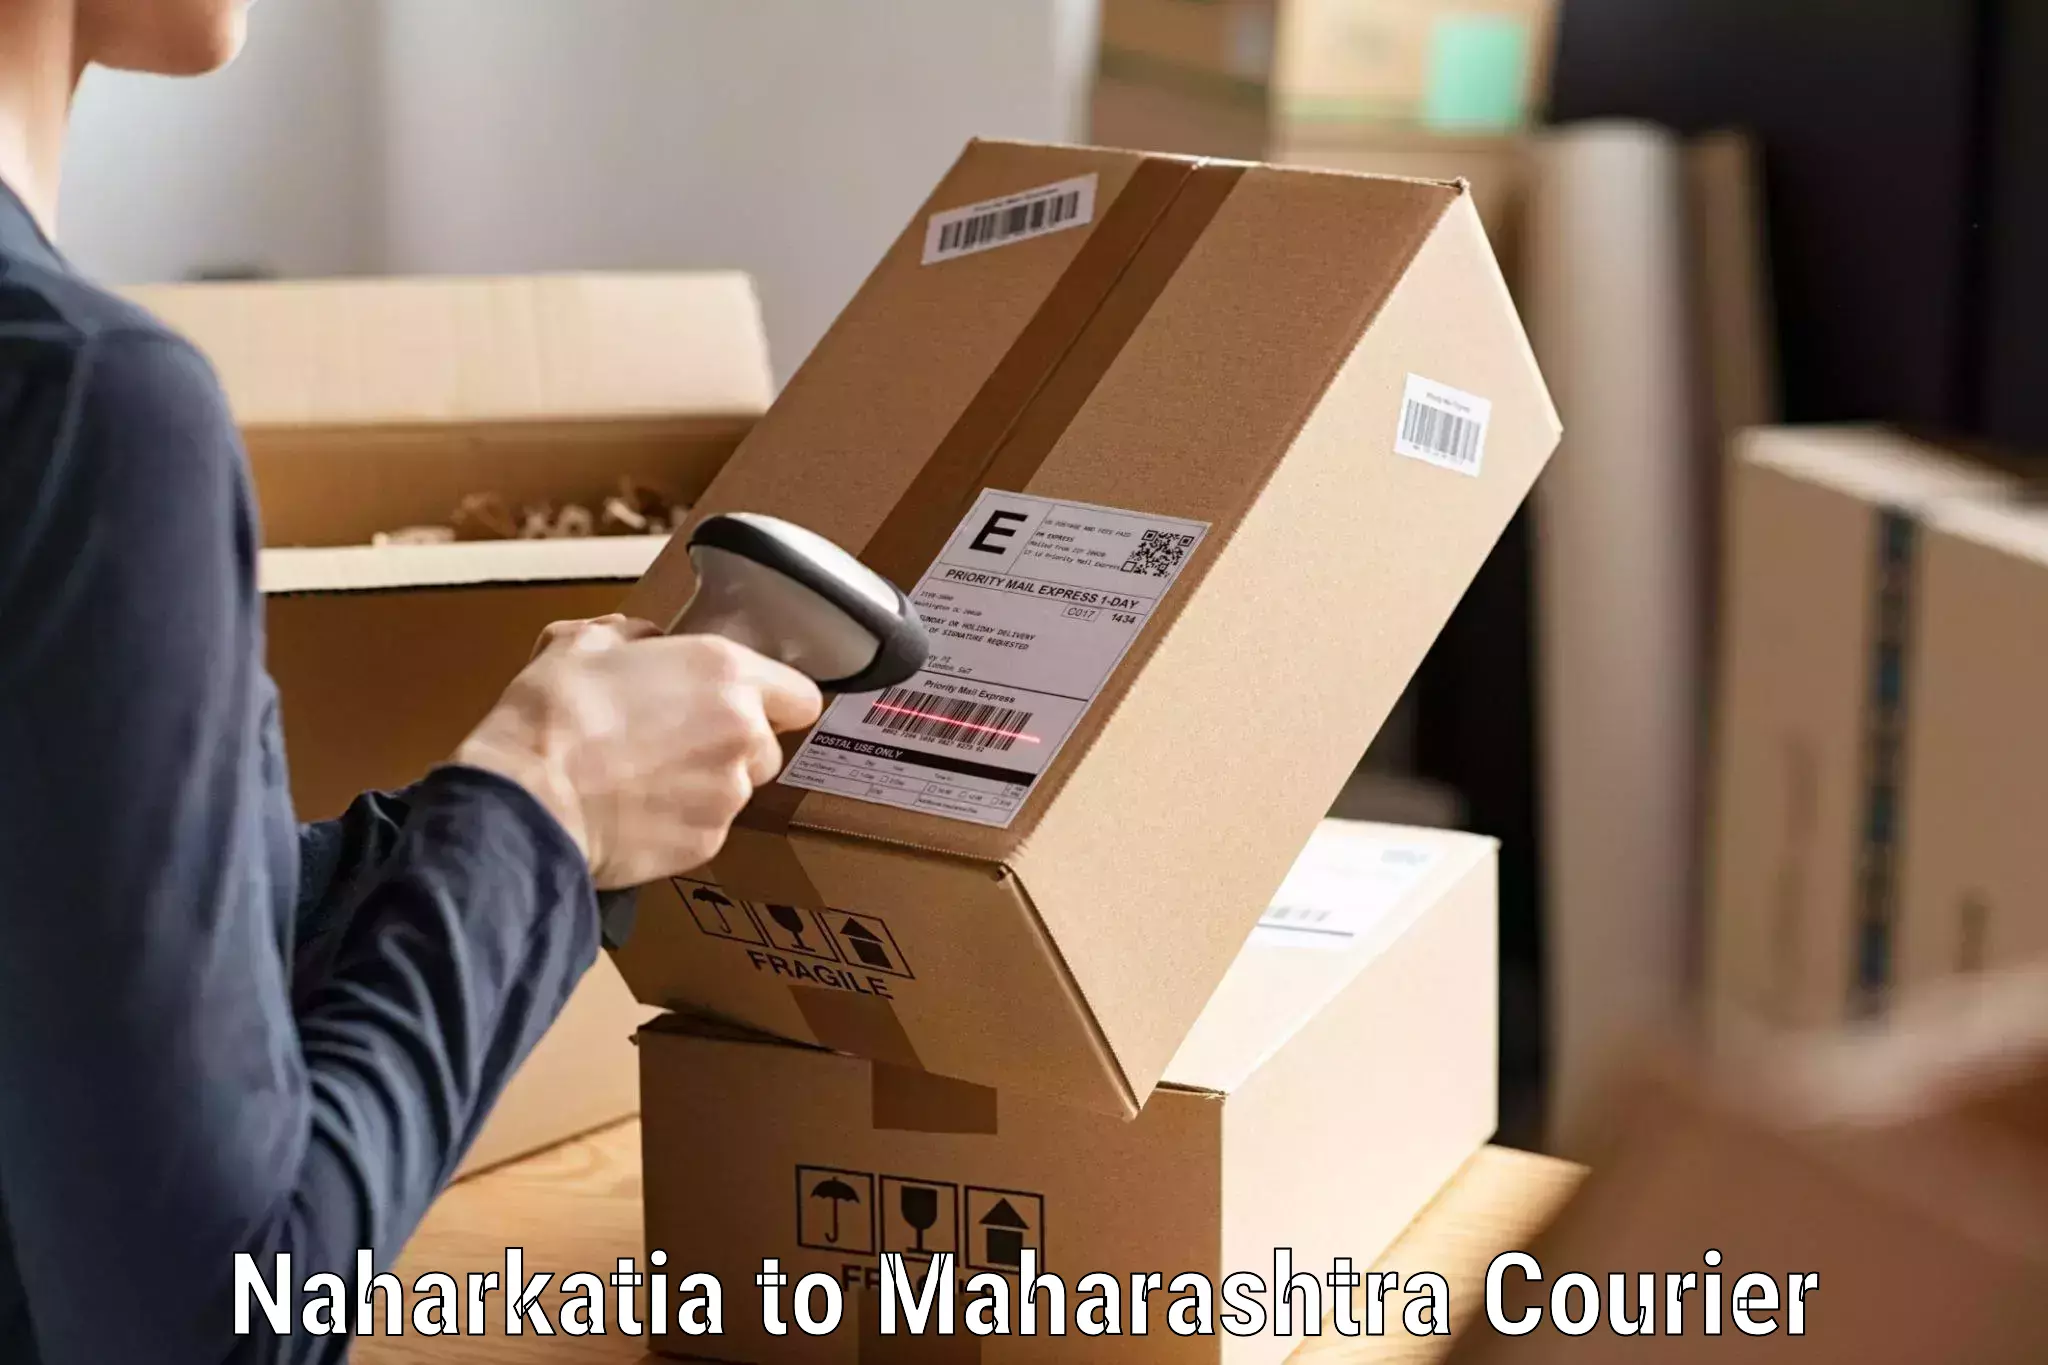 Express shipping Naharkatia to NIT Nagpur